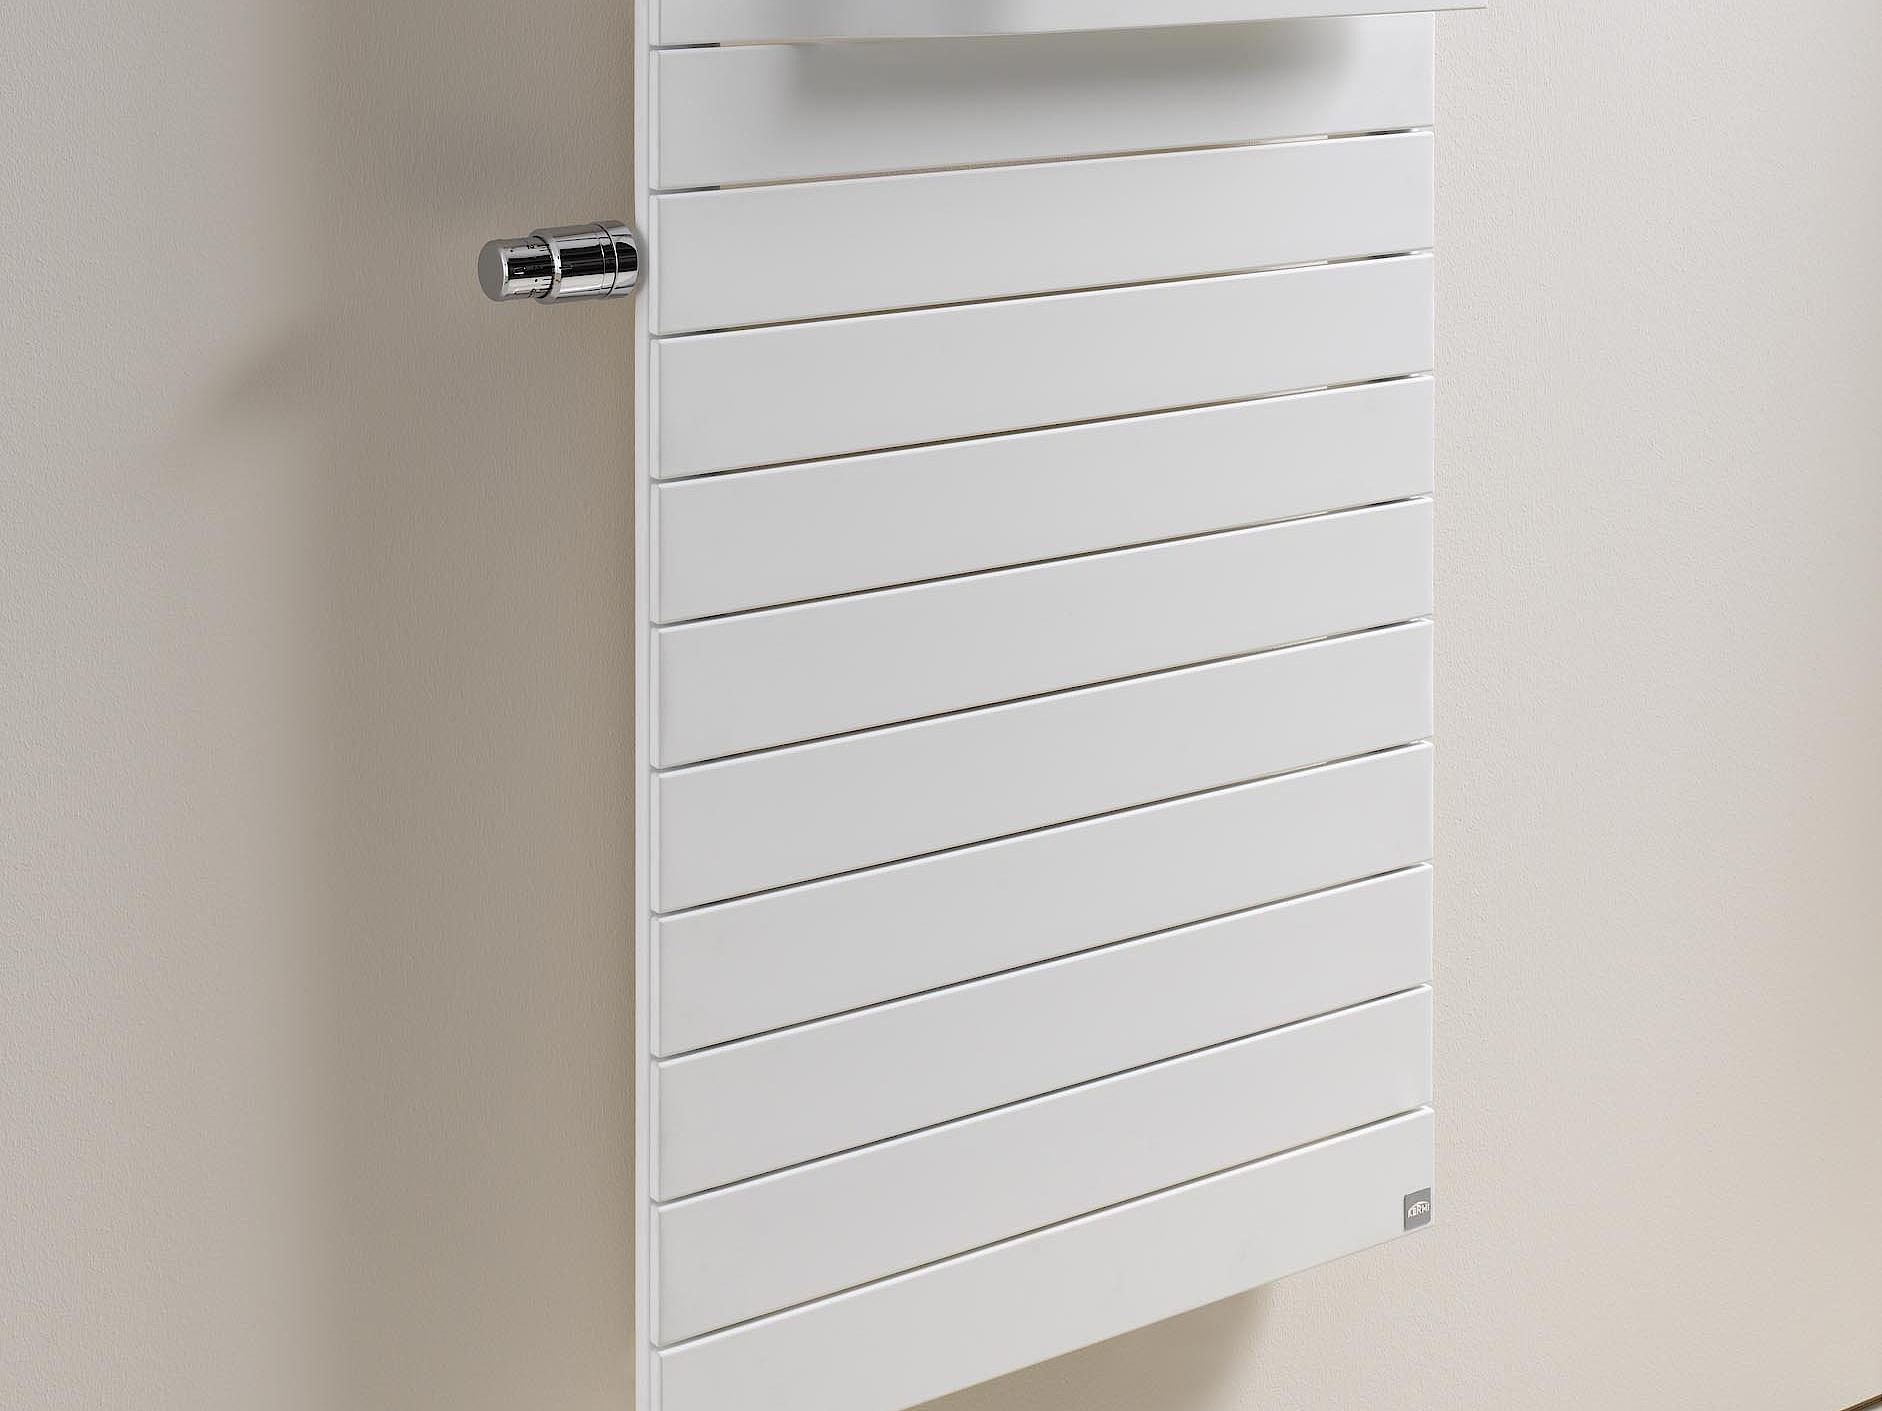 Radiatore da bagno e di design Kermi Tabeo-V con unità termostatica applicata ad un'altezza confortevole per l'utilizzo.